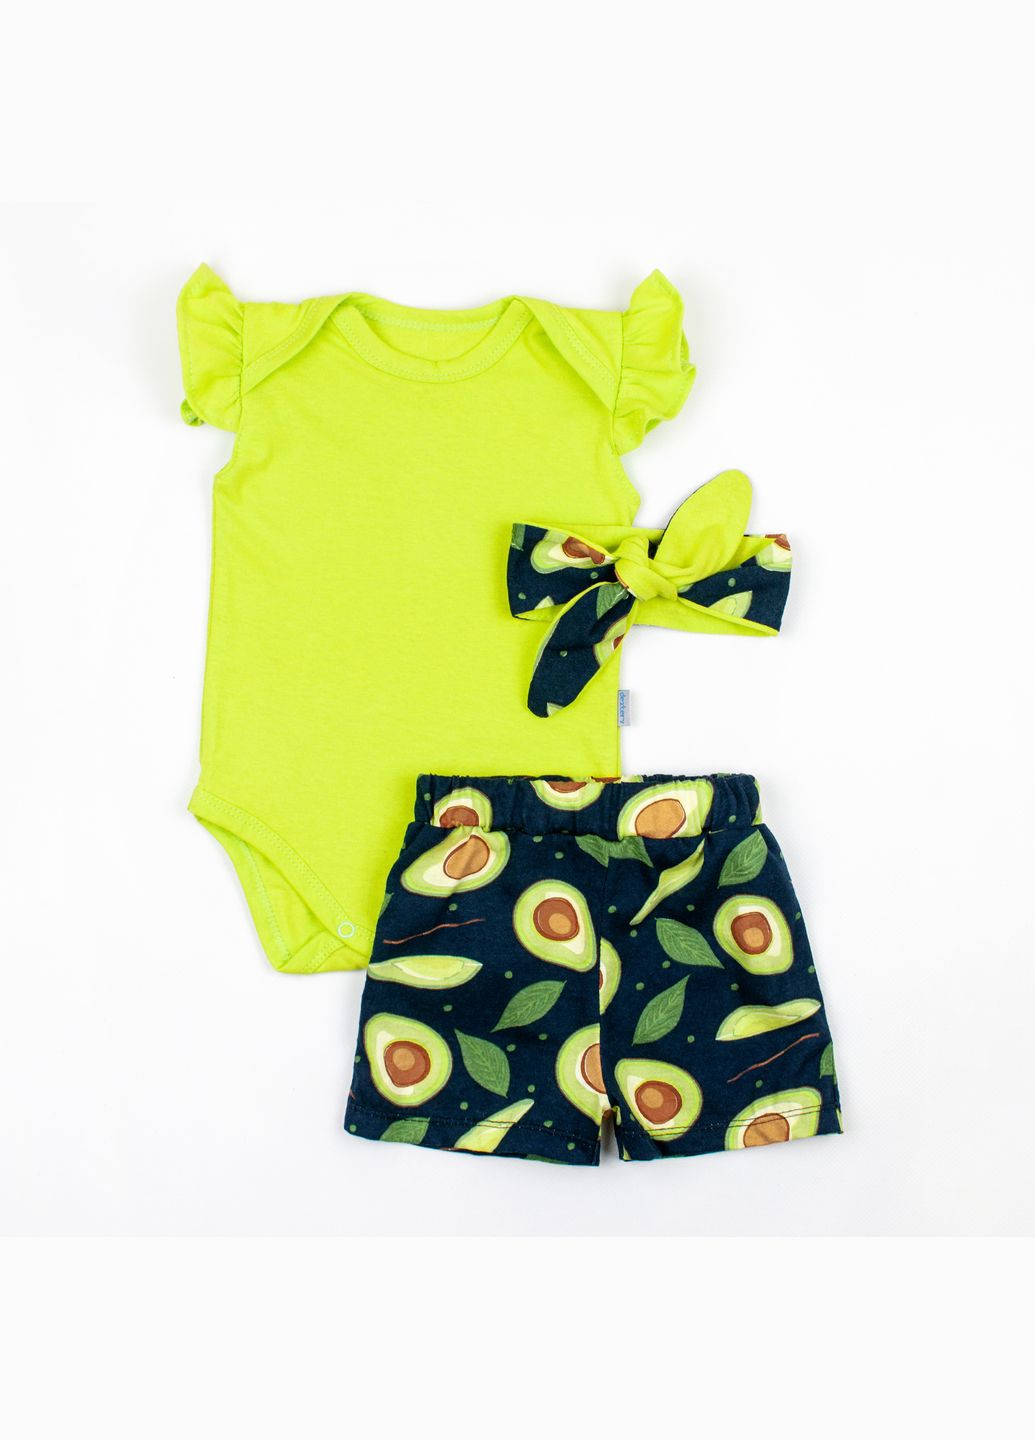 Зеленый летний комплект с повязкой для девочки dexter`s avocado зеленый dexter's